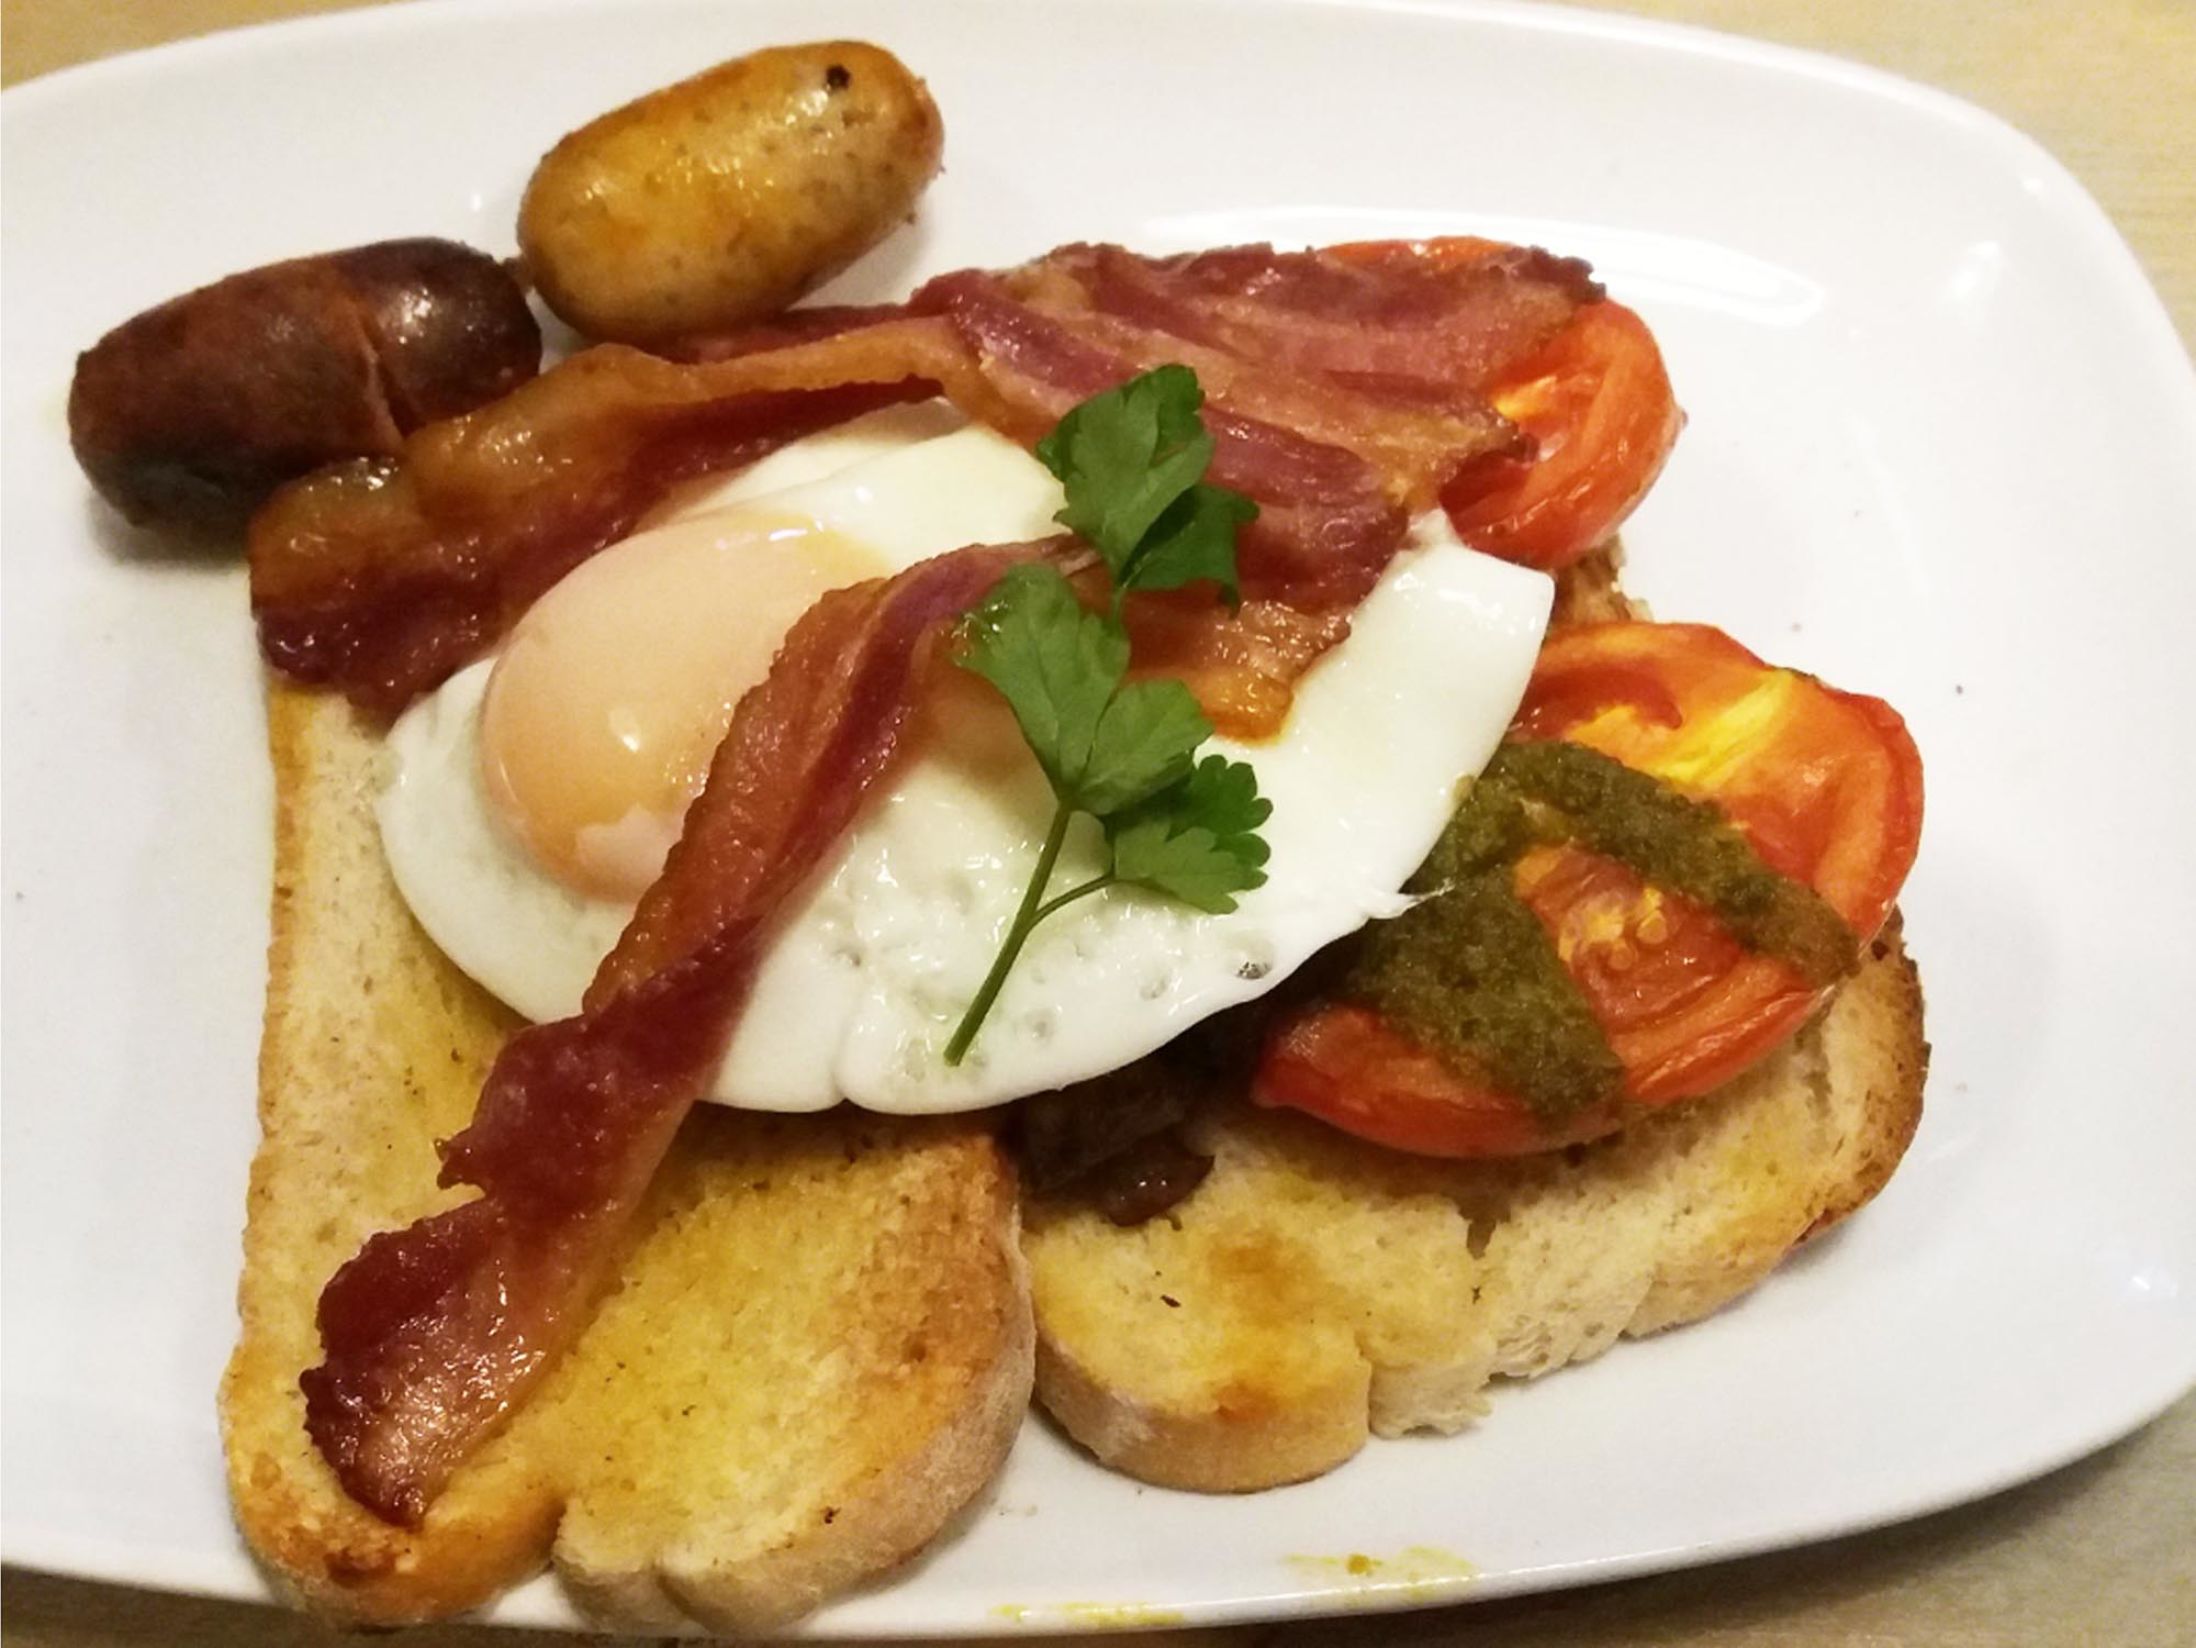 Best Breakfast in Birmingham | 14 Birmingham Breakfast Café’s